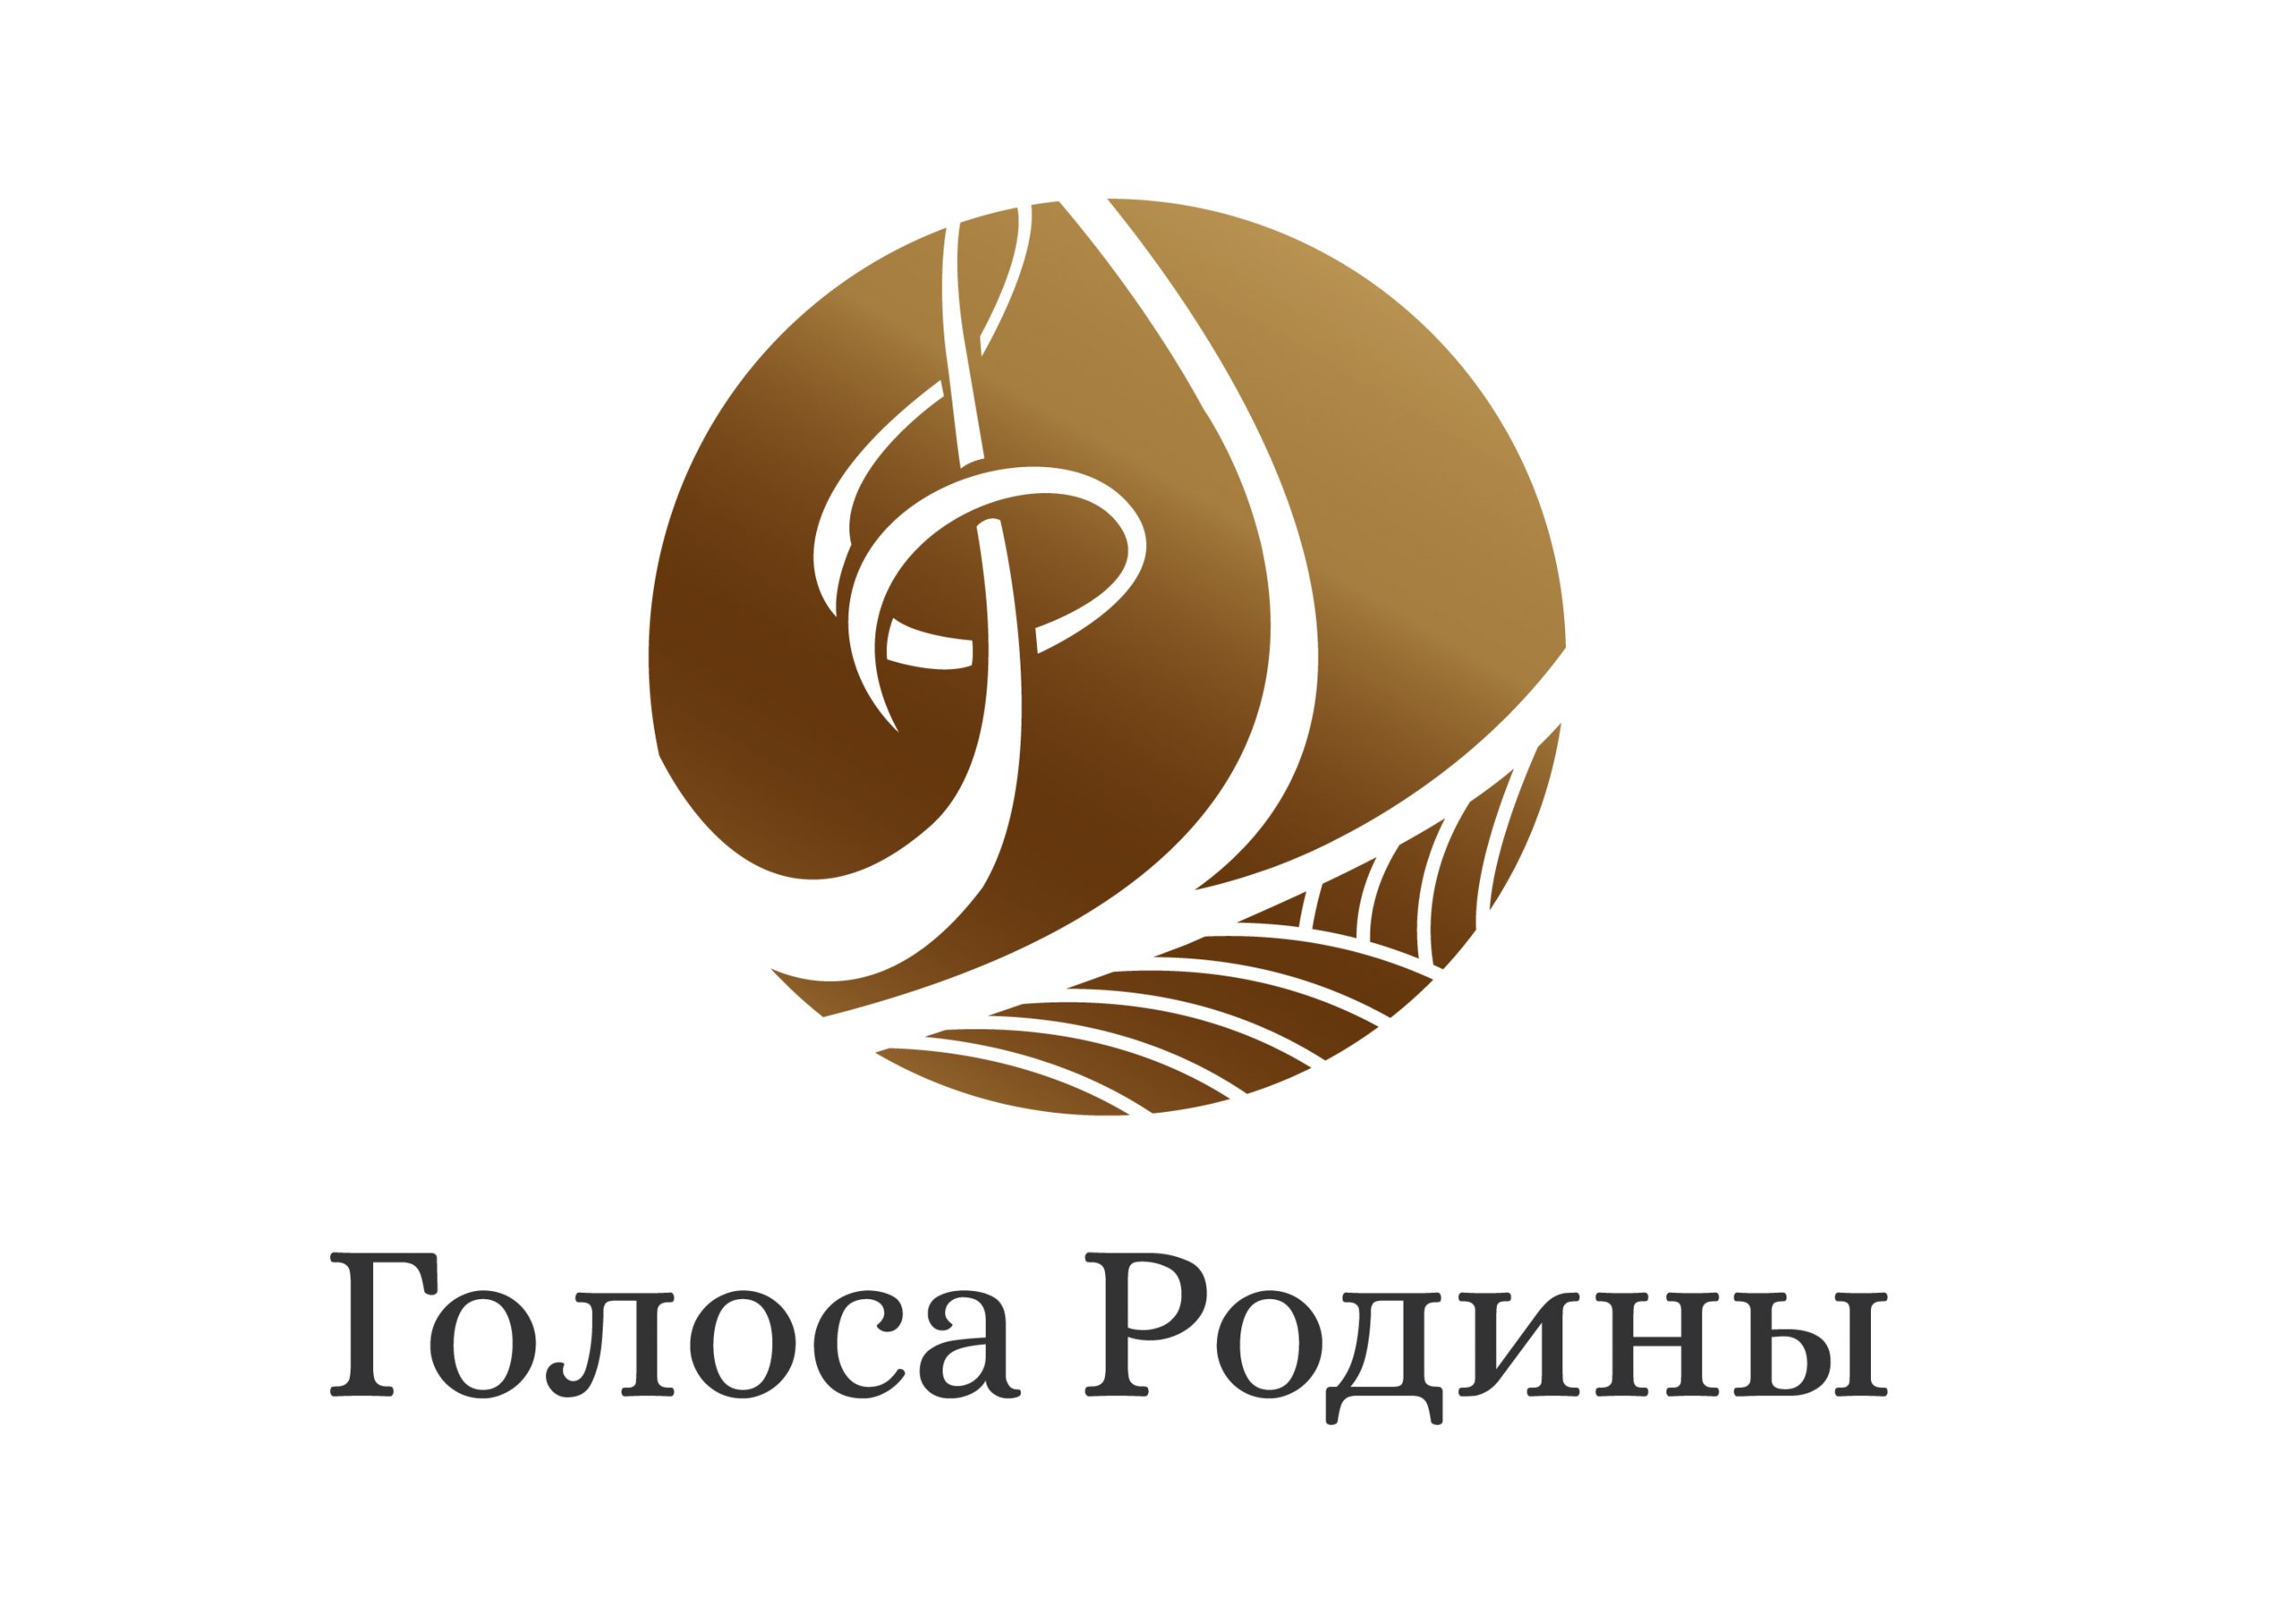 Определен состав жюри конкурса молодых композиторов и поэтов на создание патриотической песни «Голоса Родины»